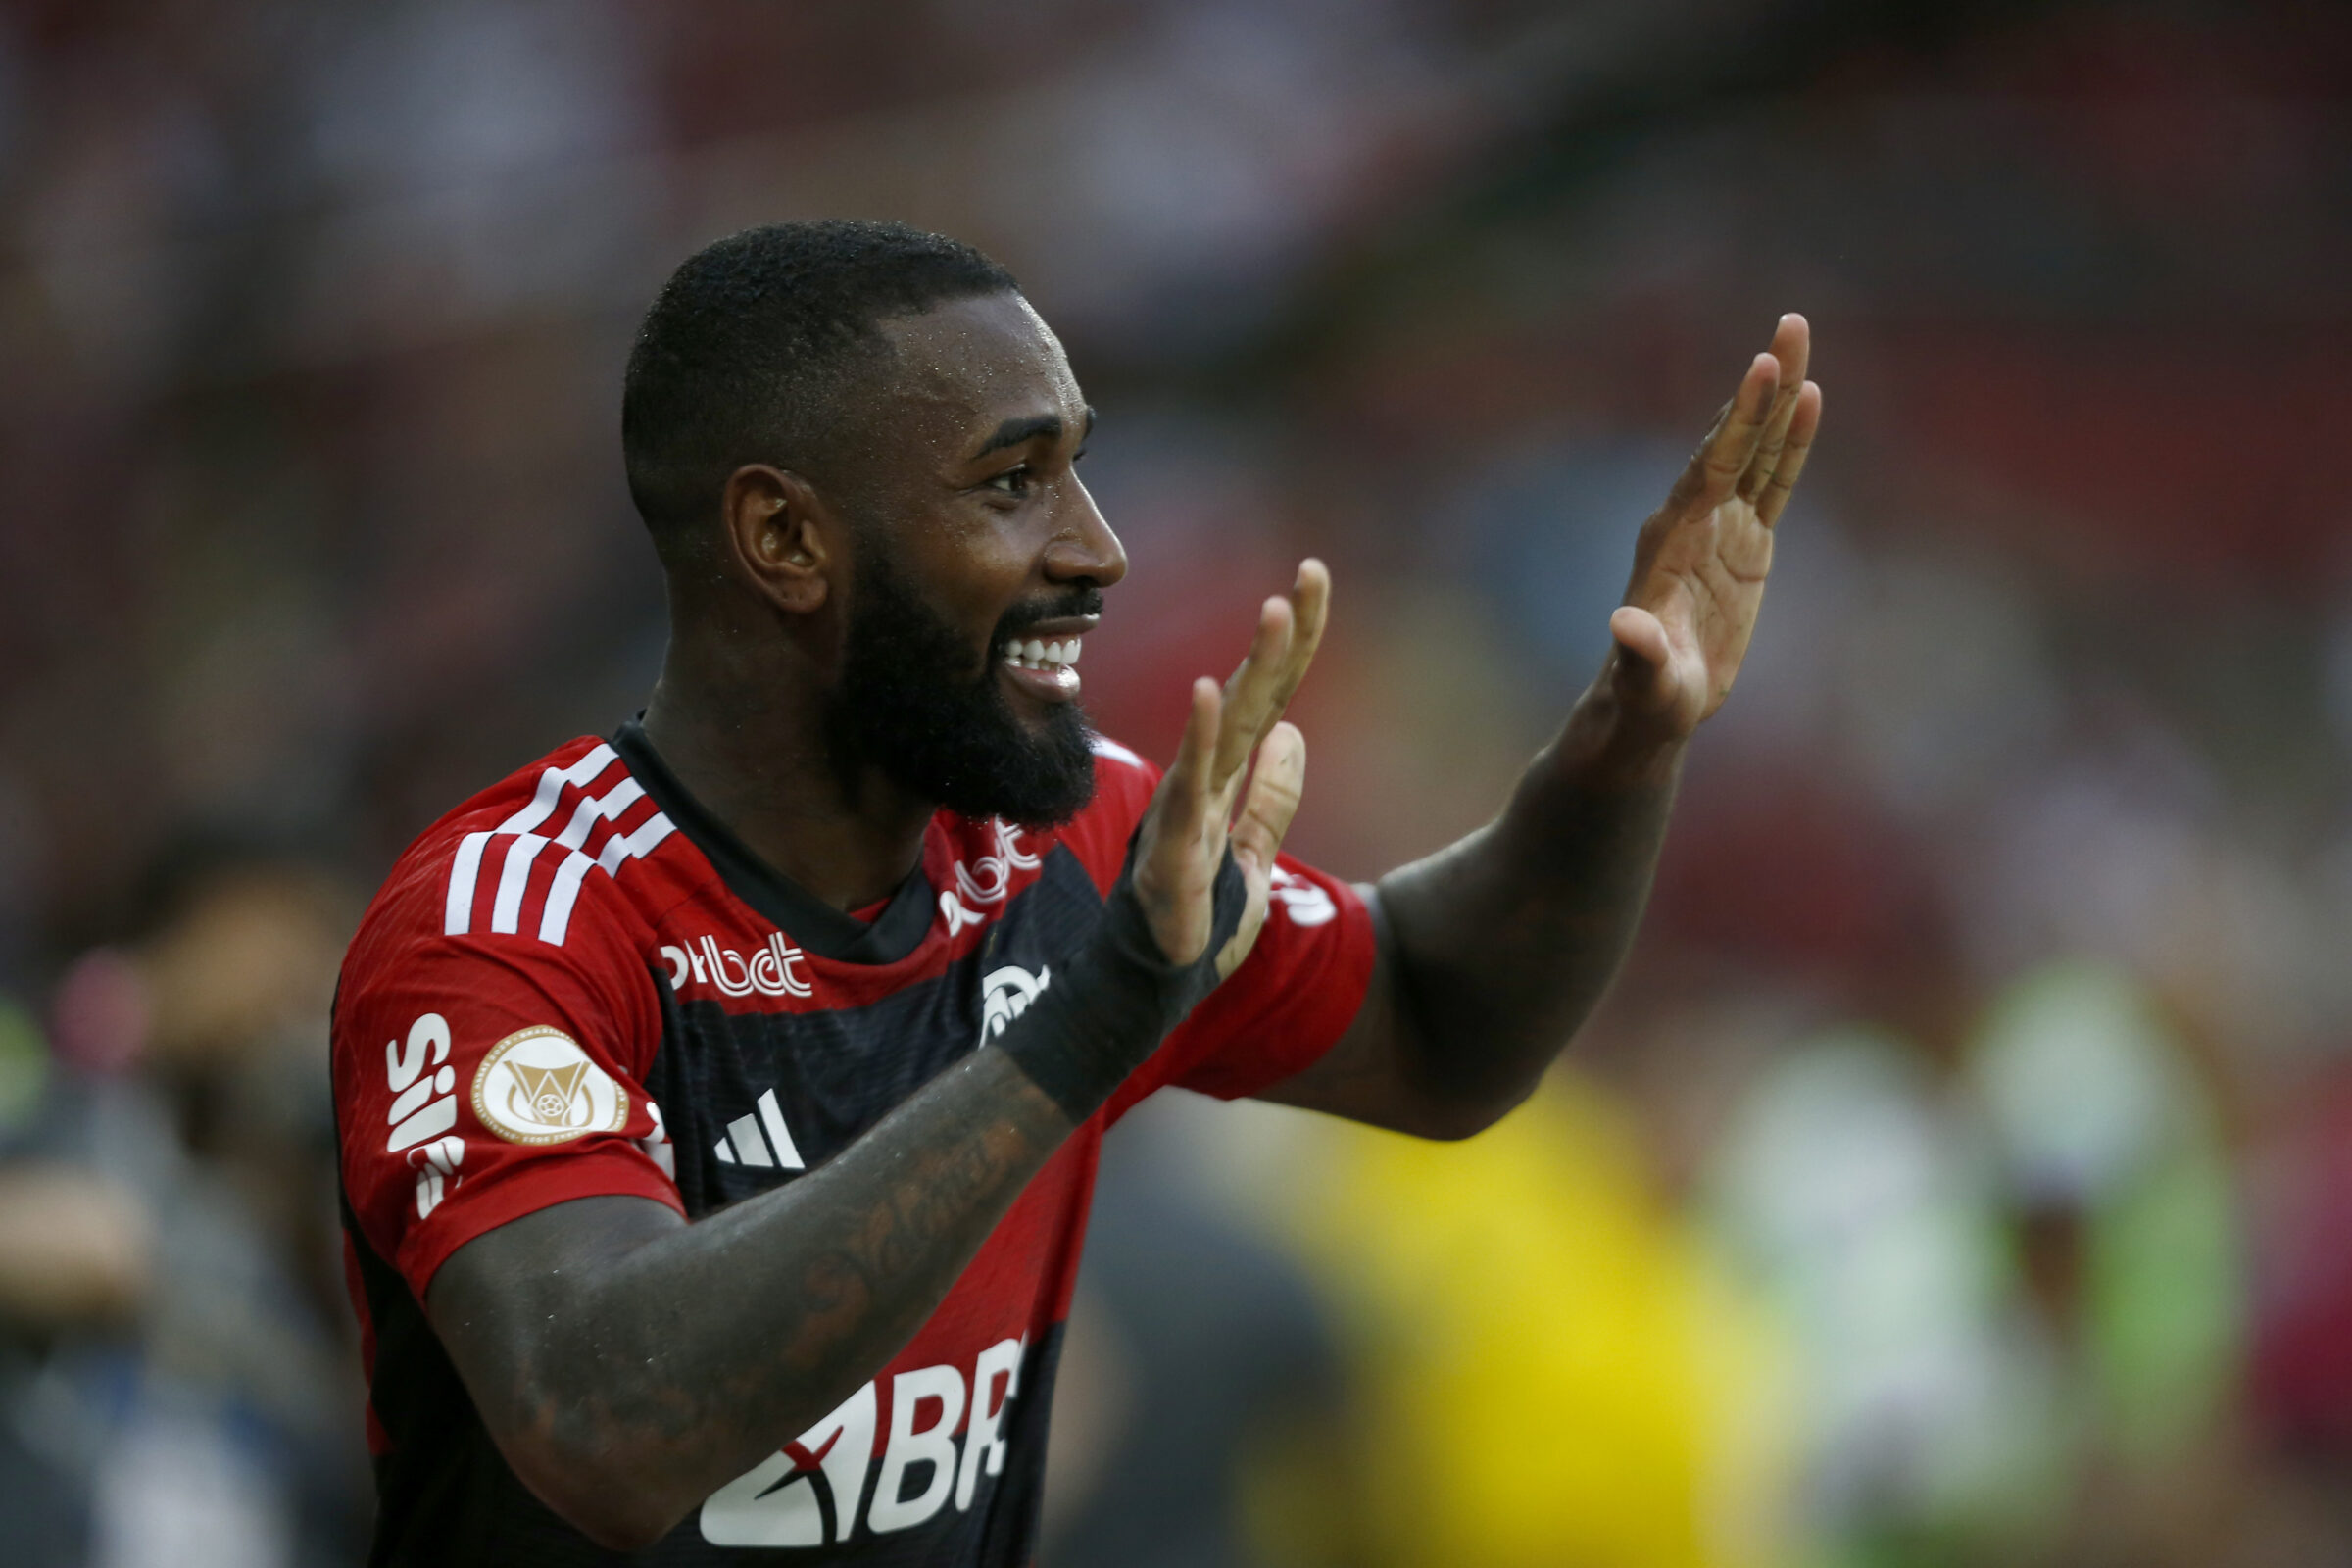 PALPITES FLAMENGO X SANTOS: Já ganhou? Flamengo tem vitória quase